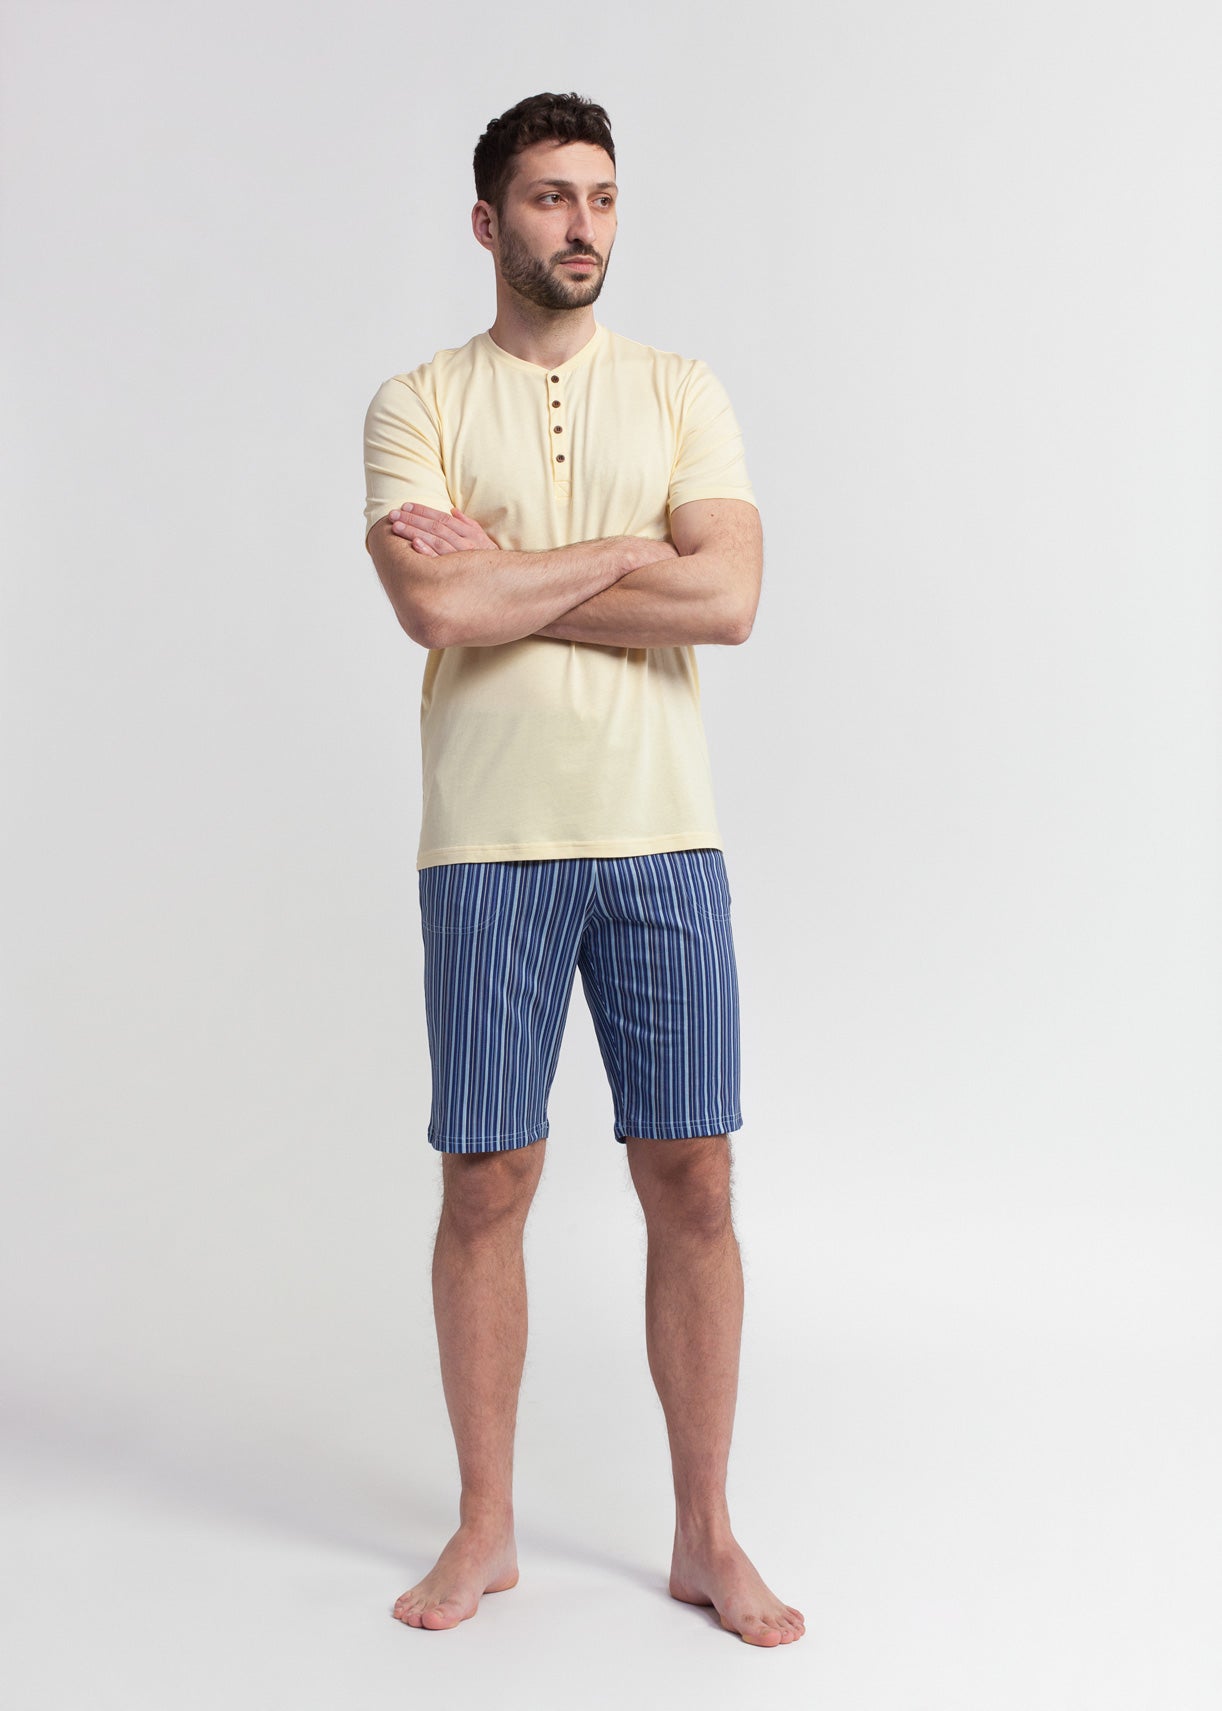 Pijama Bărbați Urban Stripes Modal